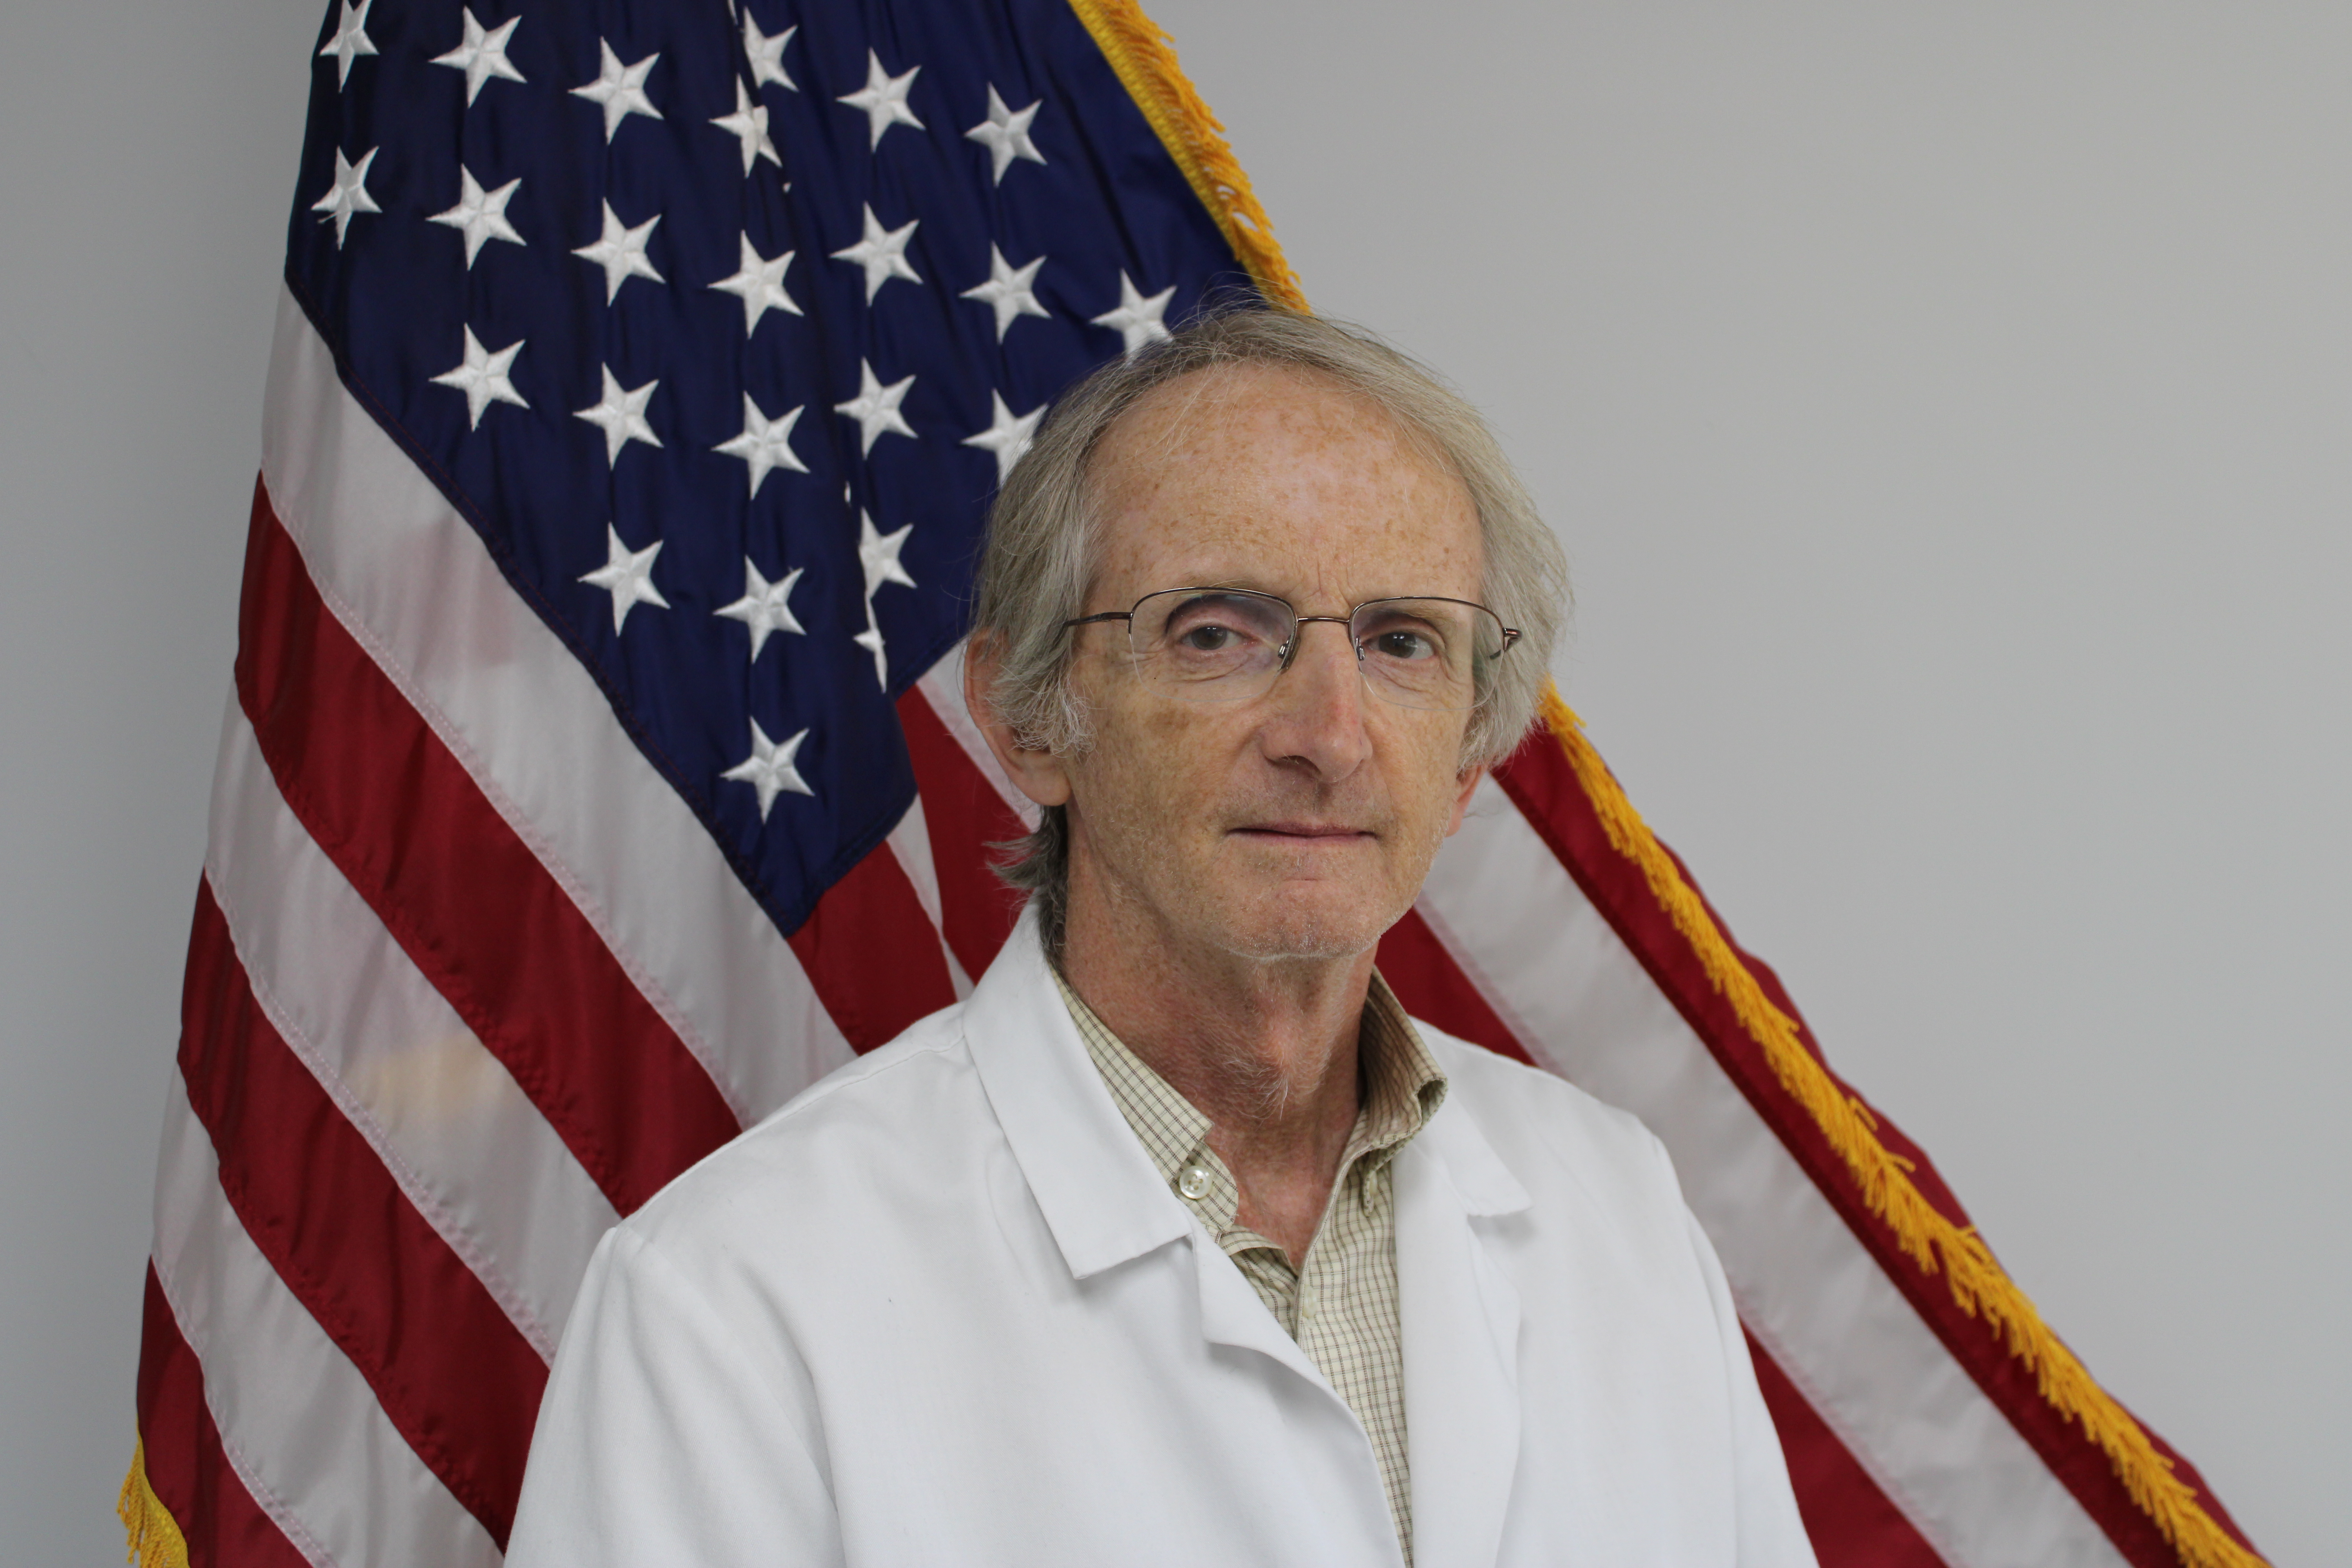 Dr. Michael Heninger